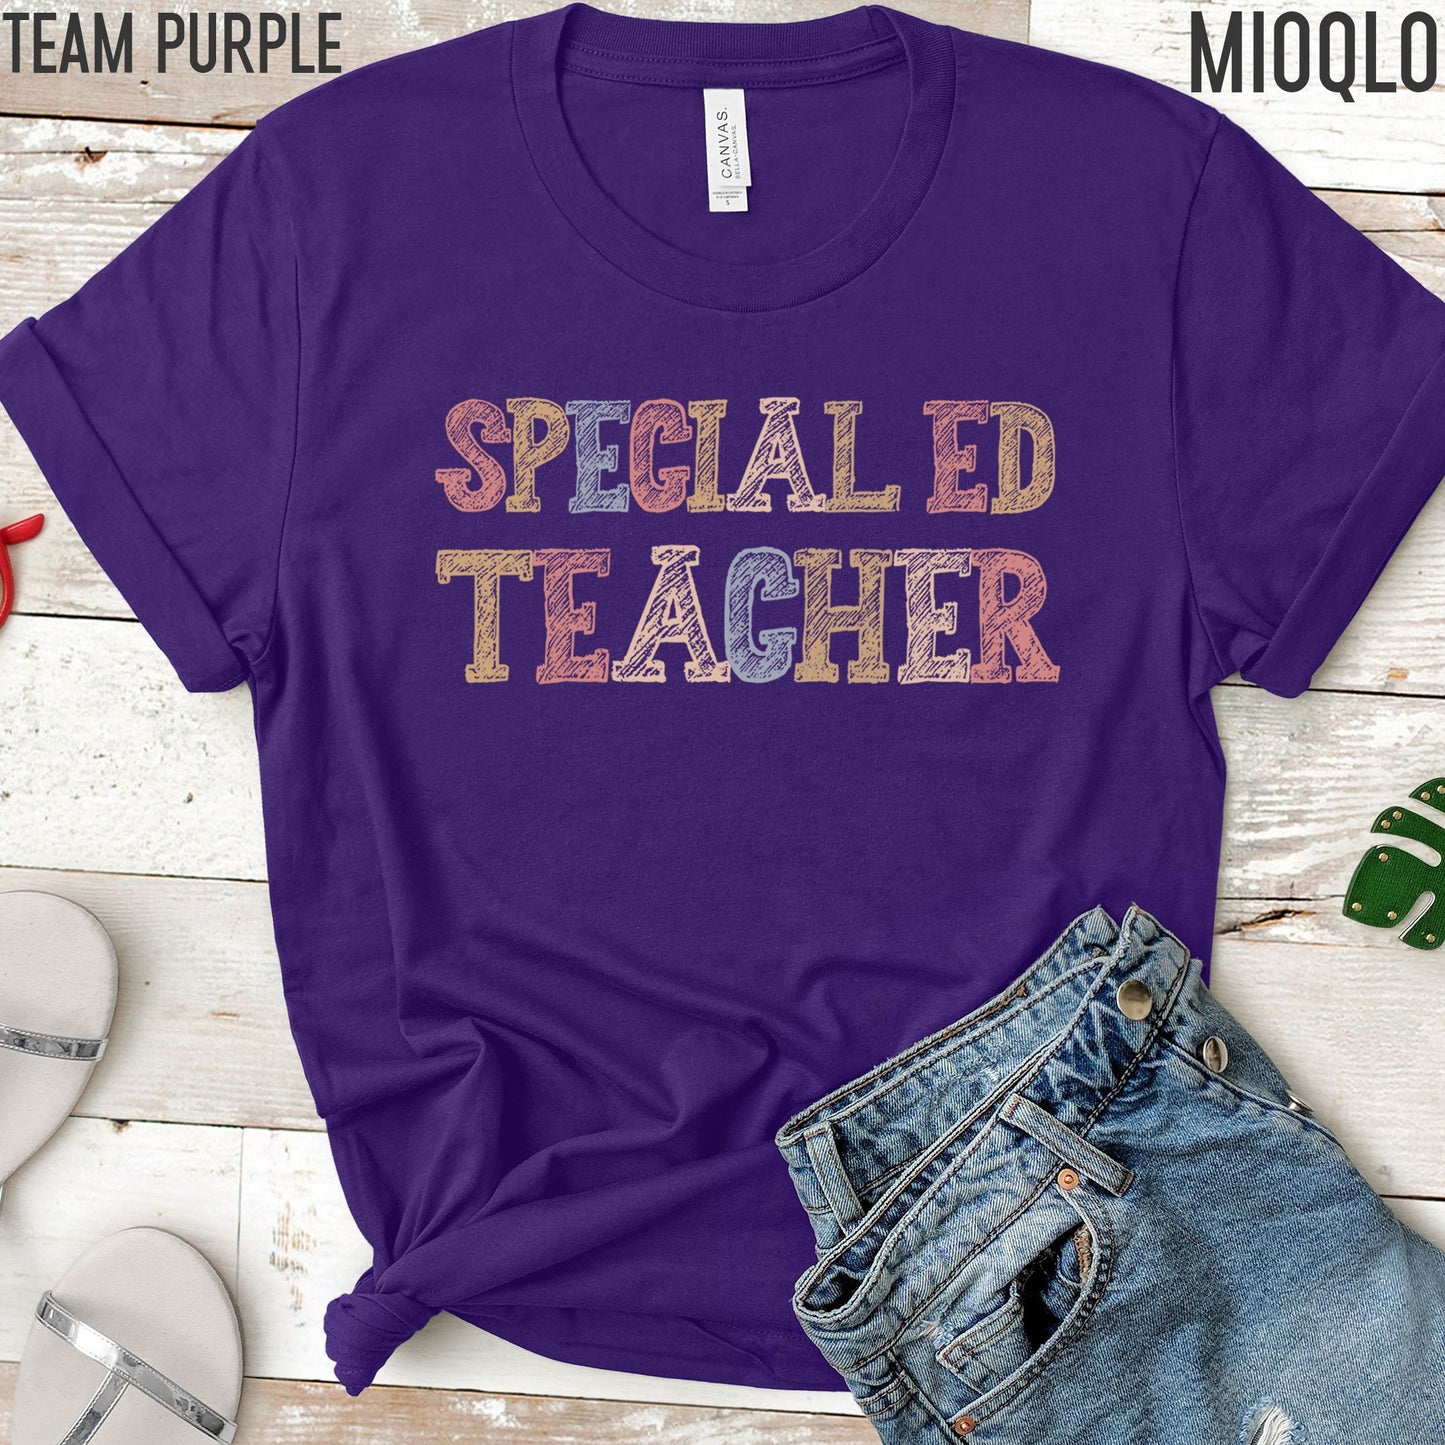 Special Education Teacher Shirt, Special Education Gift, SPEDucator, Special Ed Teacher, Special Ed Tee, Gift for Special Education Teacher